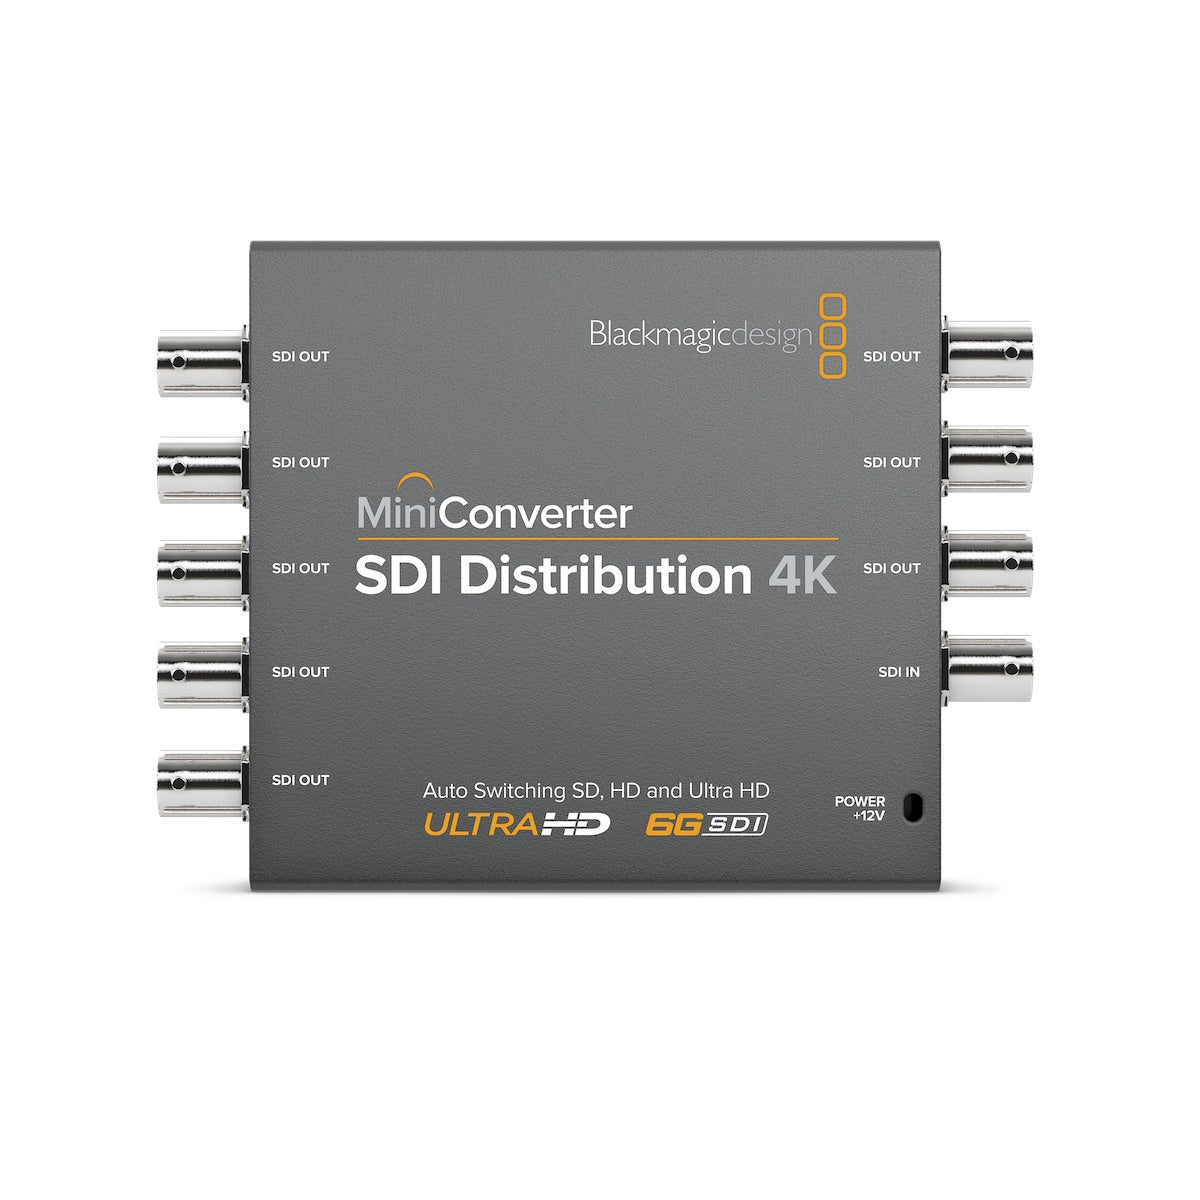 Blackmagic Mini Converter SDI Distribution 4K, front